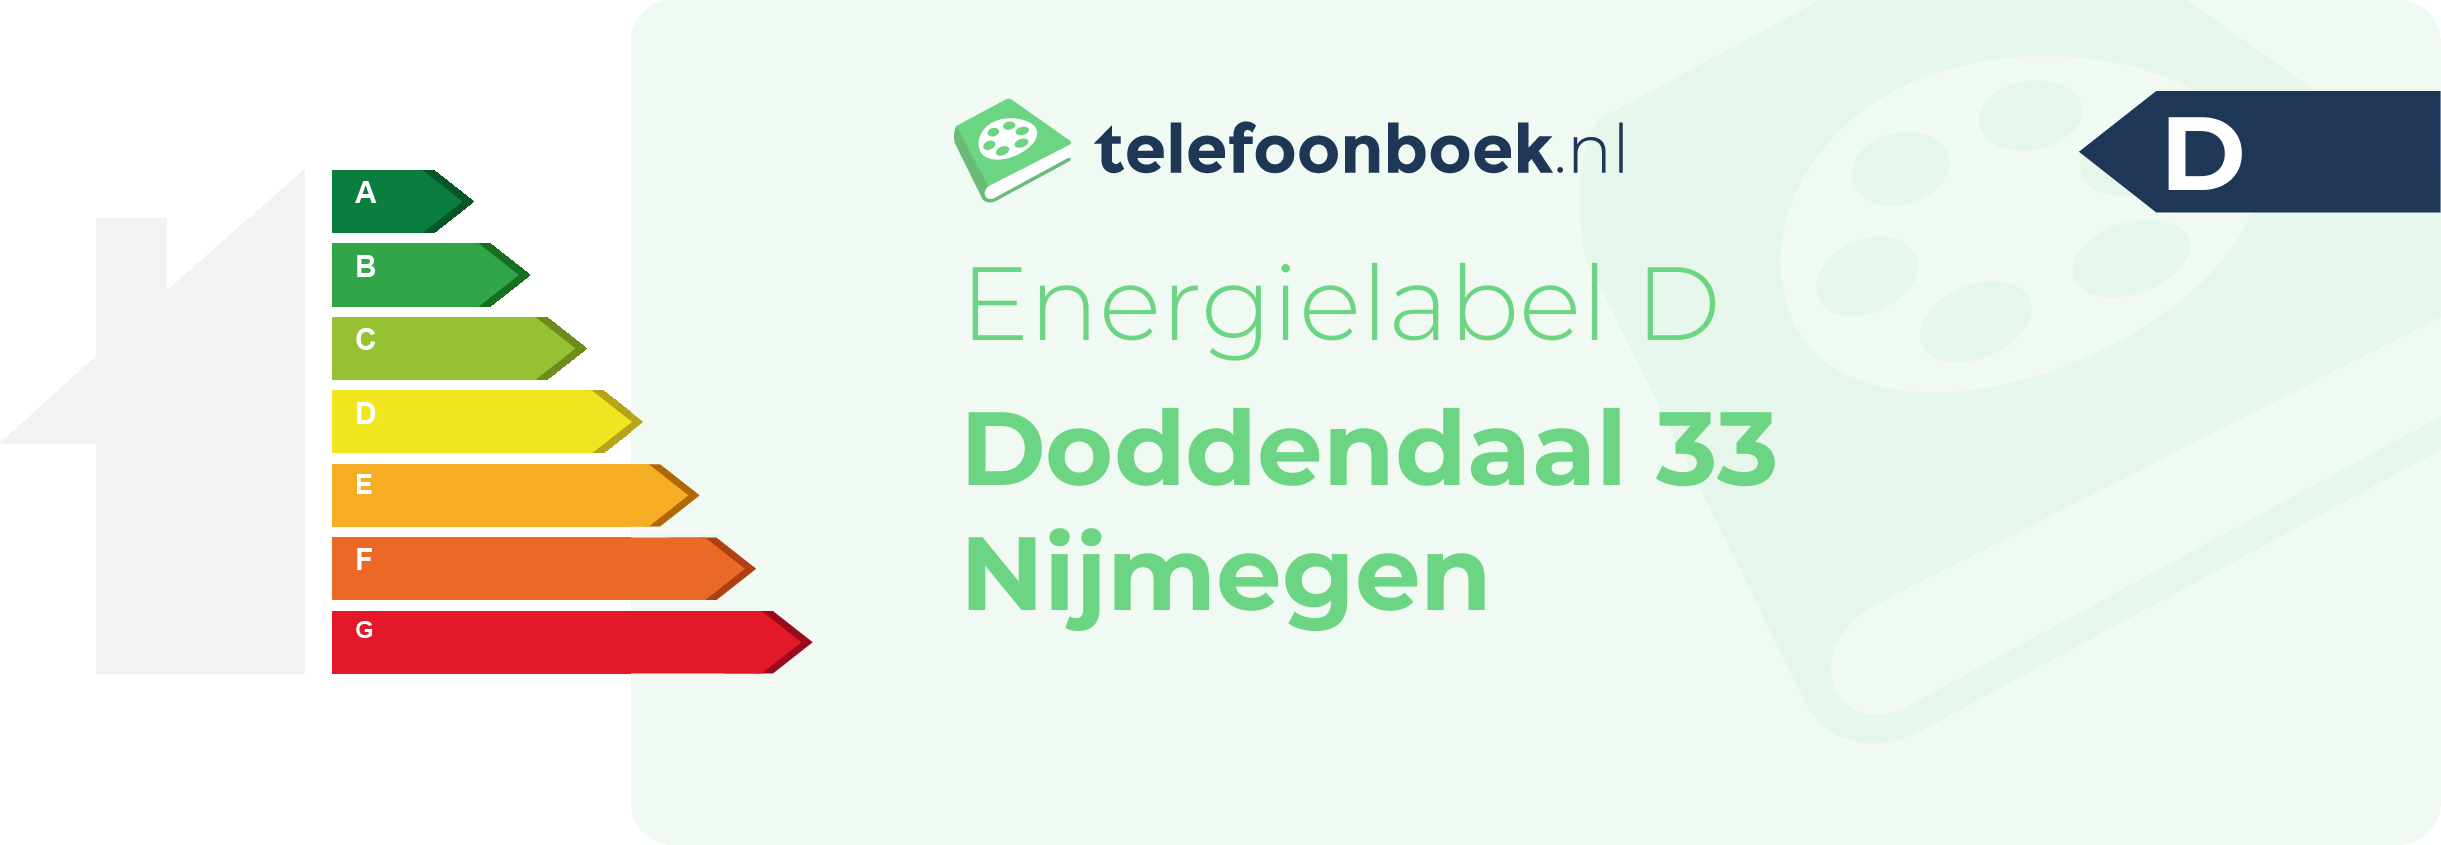 Energielabel Doddendaal 33 Nijmegen